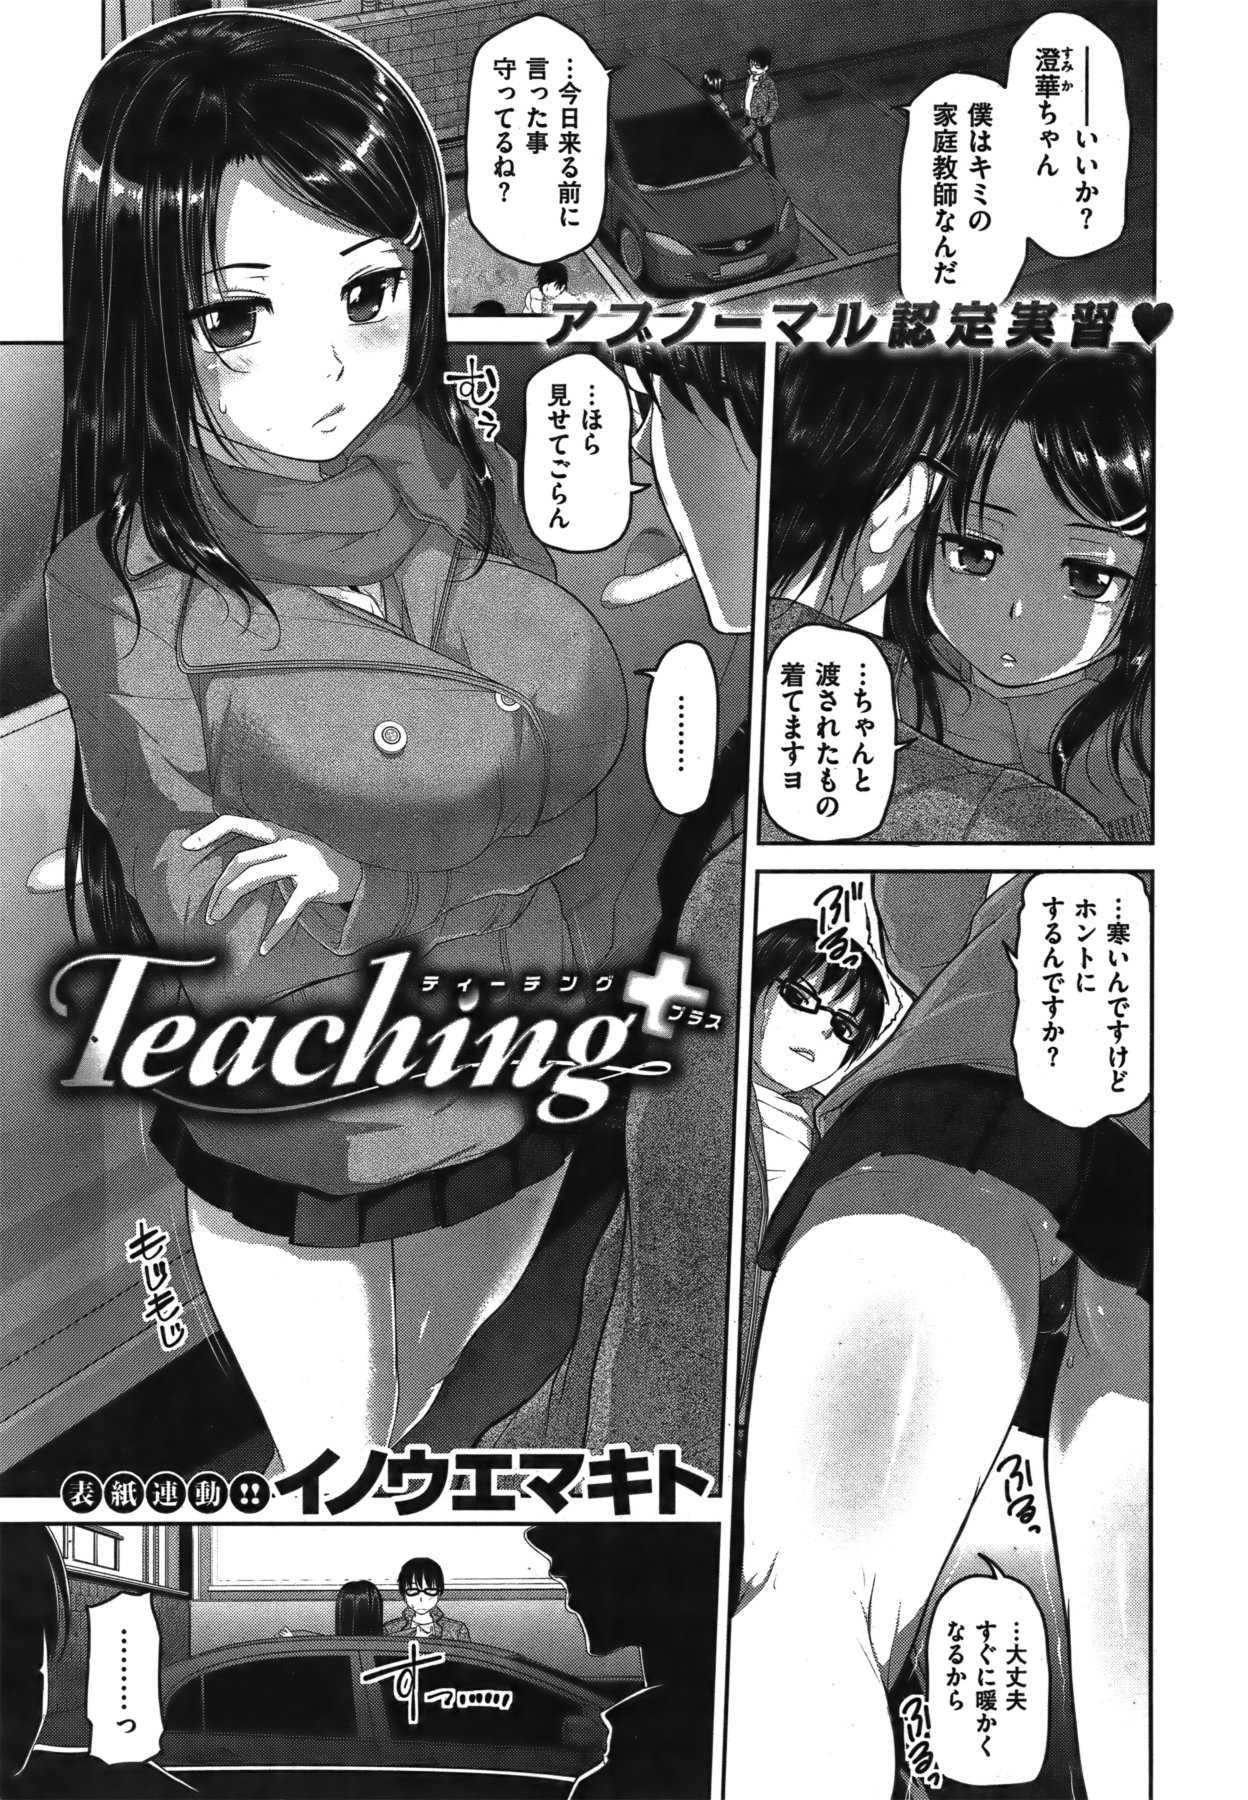 [Inoue Makito] Teaching Ch.1-2 (complete) [イノウエマキト] Teaching 第1-2話(完)